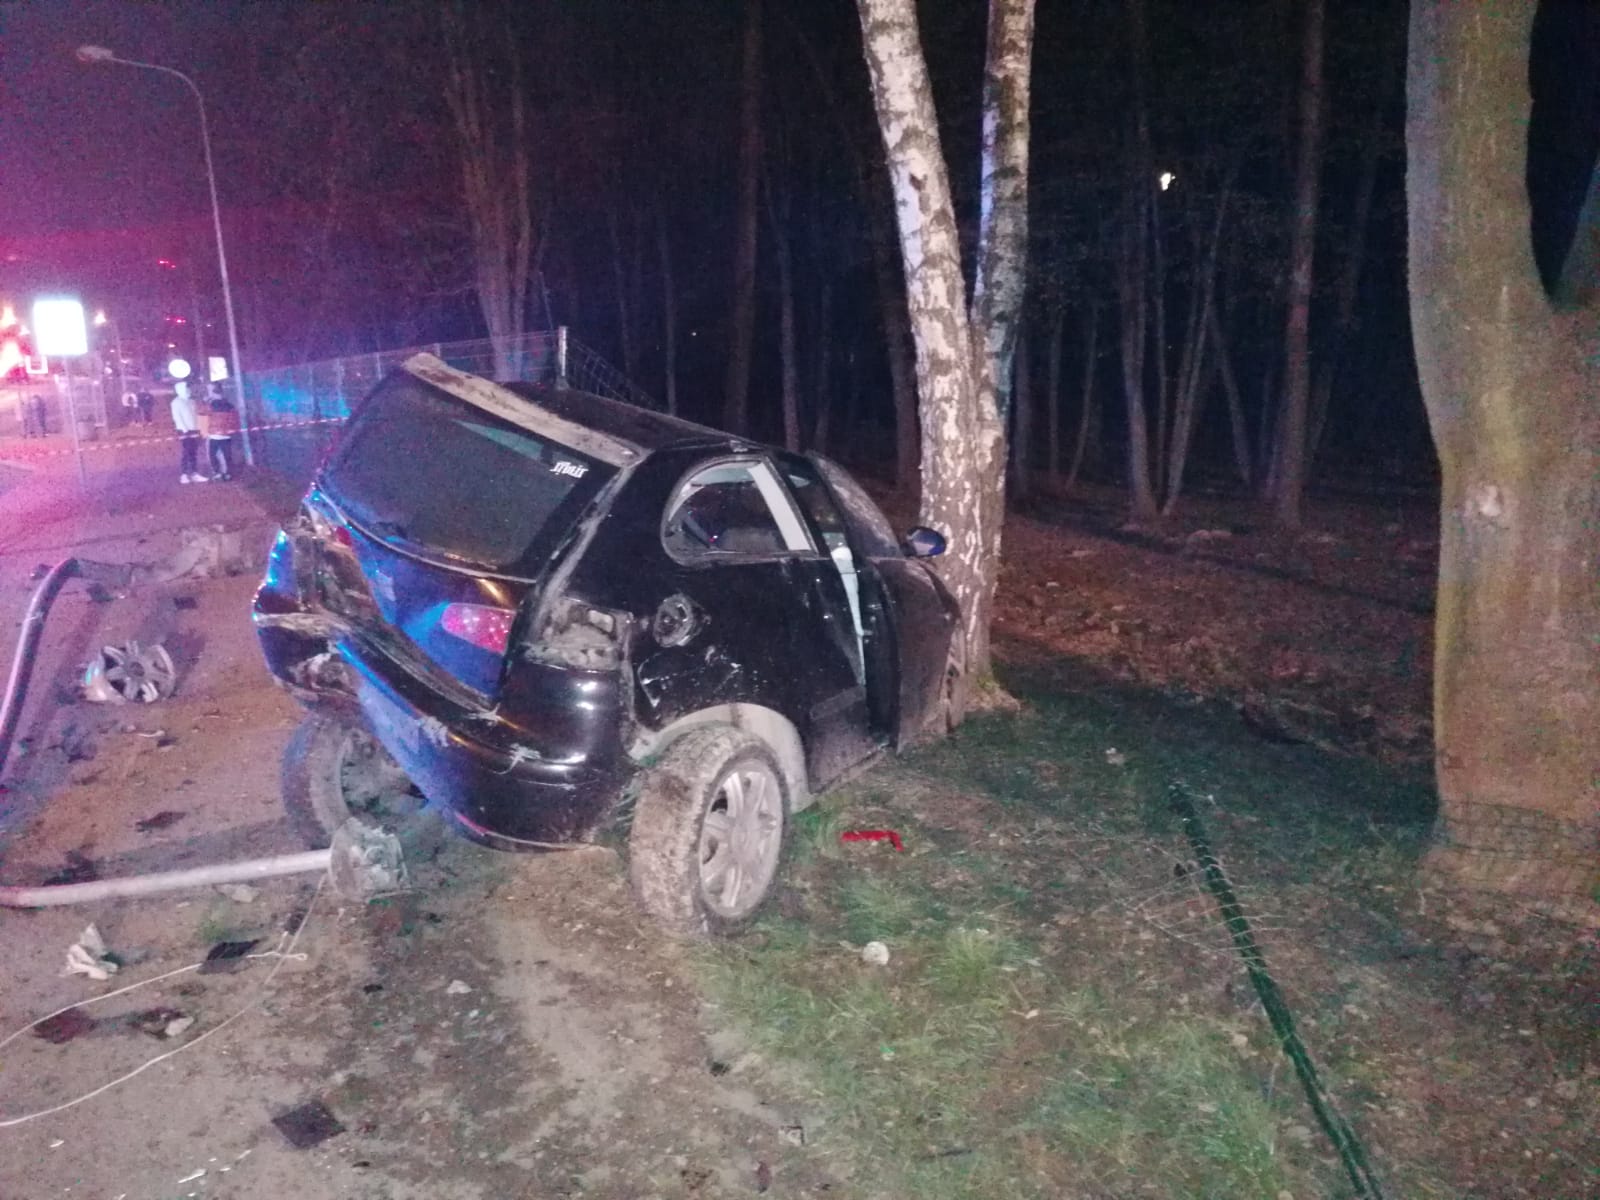 KPP Oświęcim. Wypadek drogowy seat uderzył w ogrodzenie i drzewo (1)